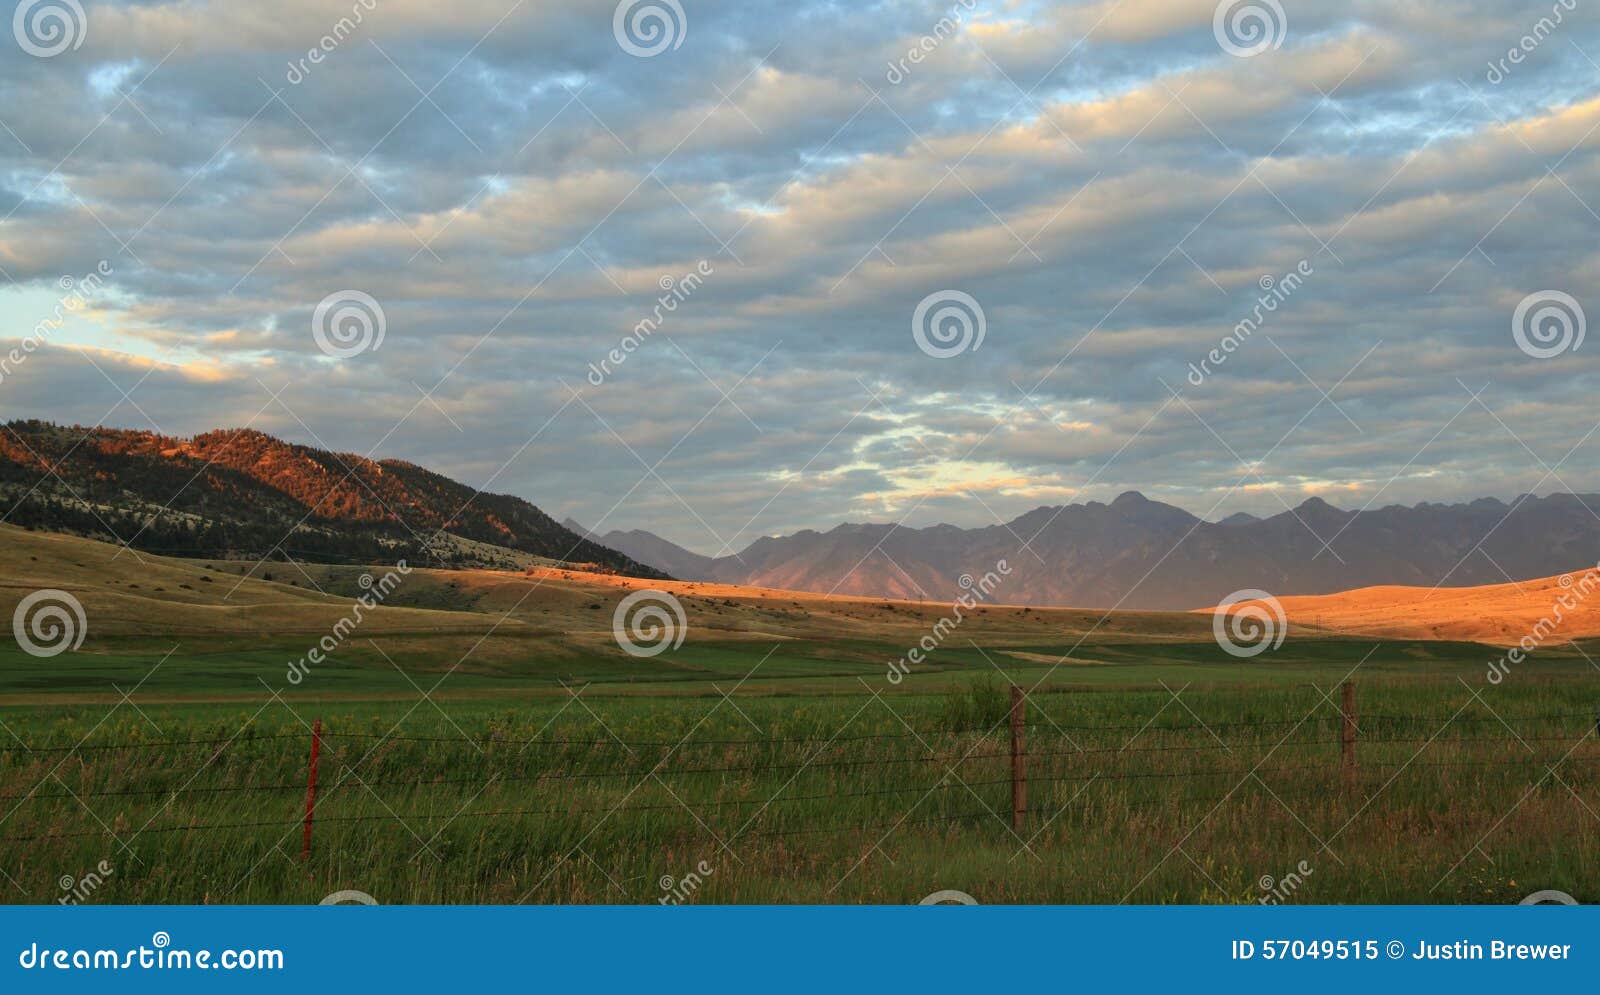 farmland sunset in montana